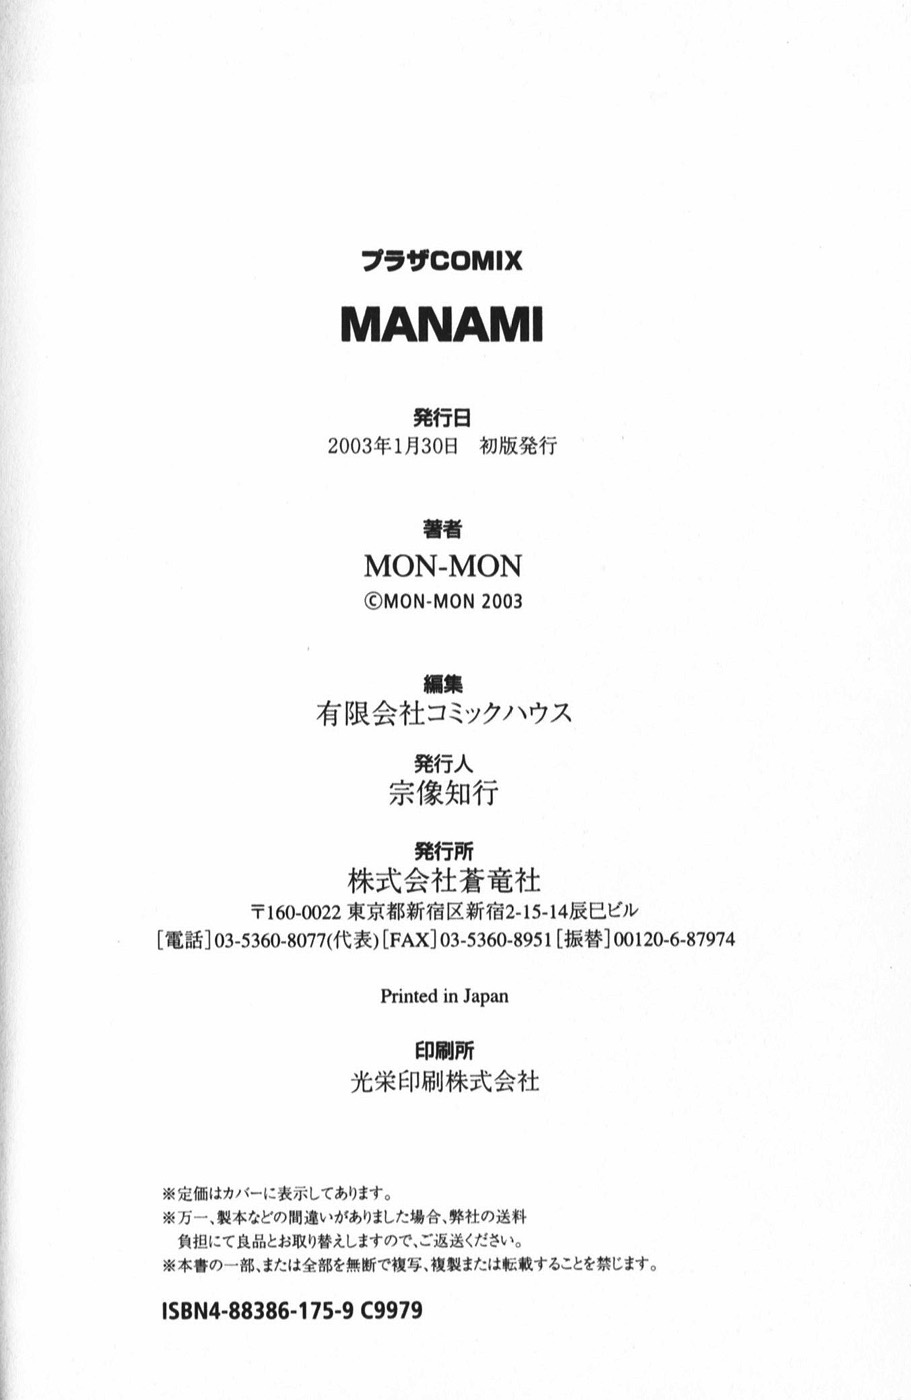 [Mon-Mon] Manami [MON-MON] MANAMI